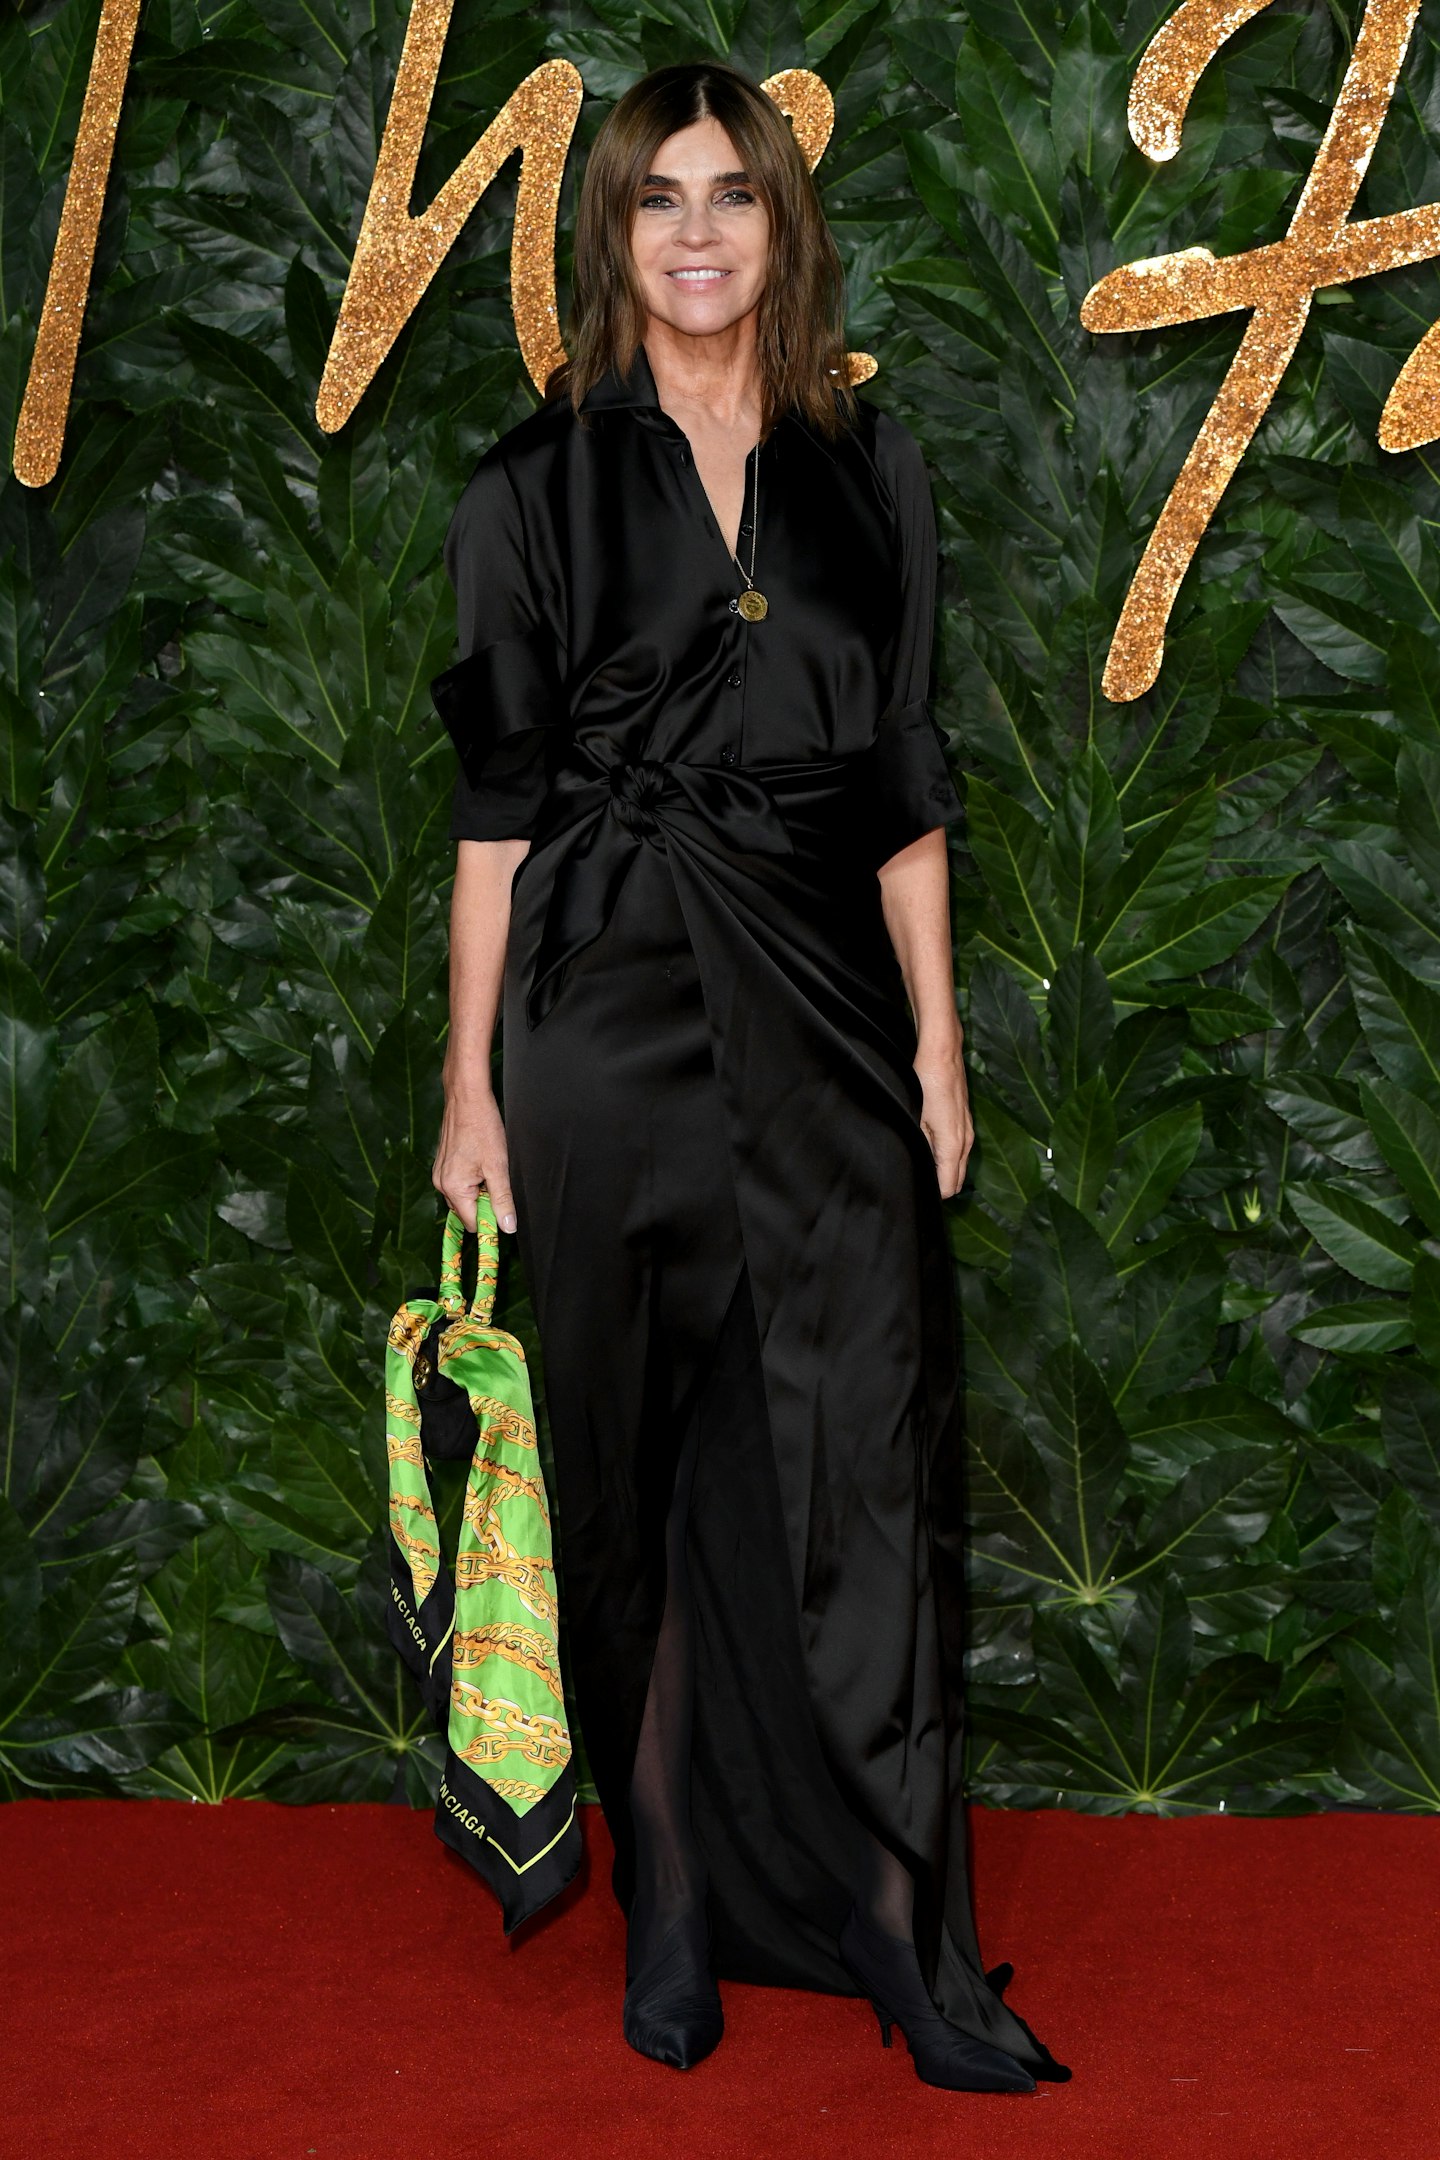 Carine Roitfeld at The Fashion Awards 2018